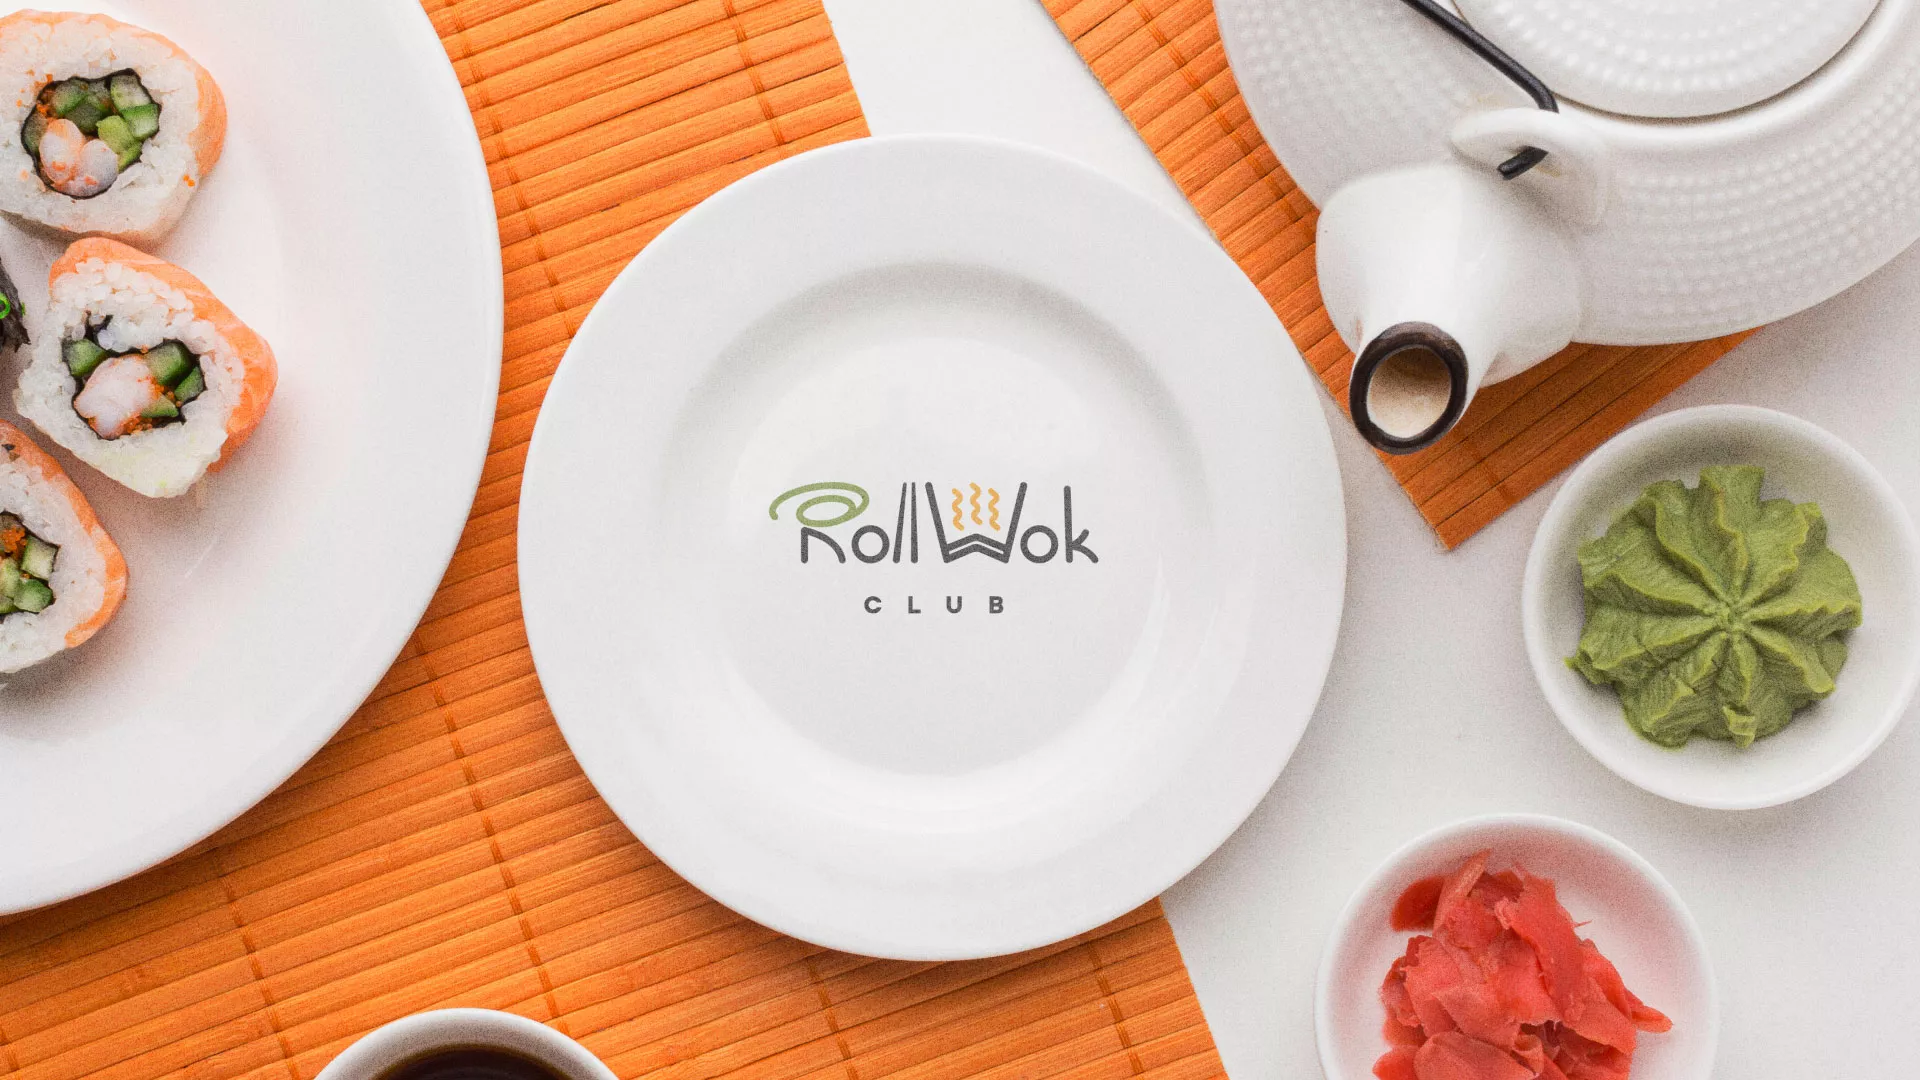 Разработка логотипа и фирменного стиля суши-бара «Roll Wok Club» в Бронницах